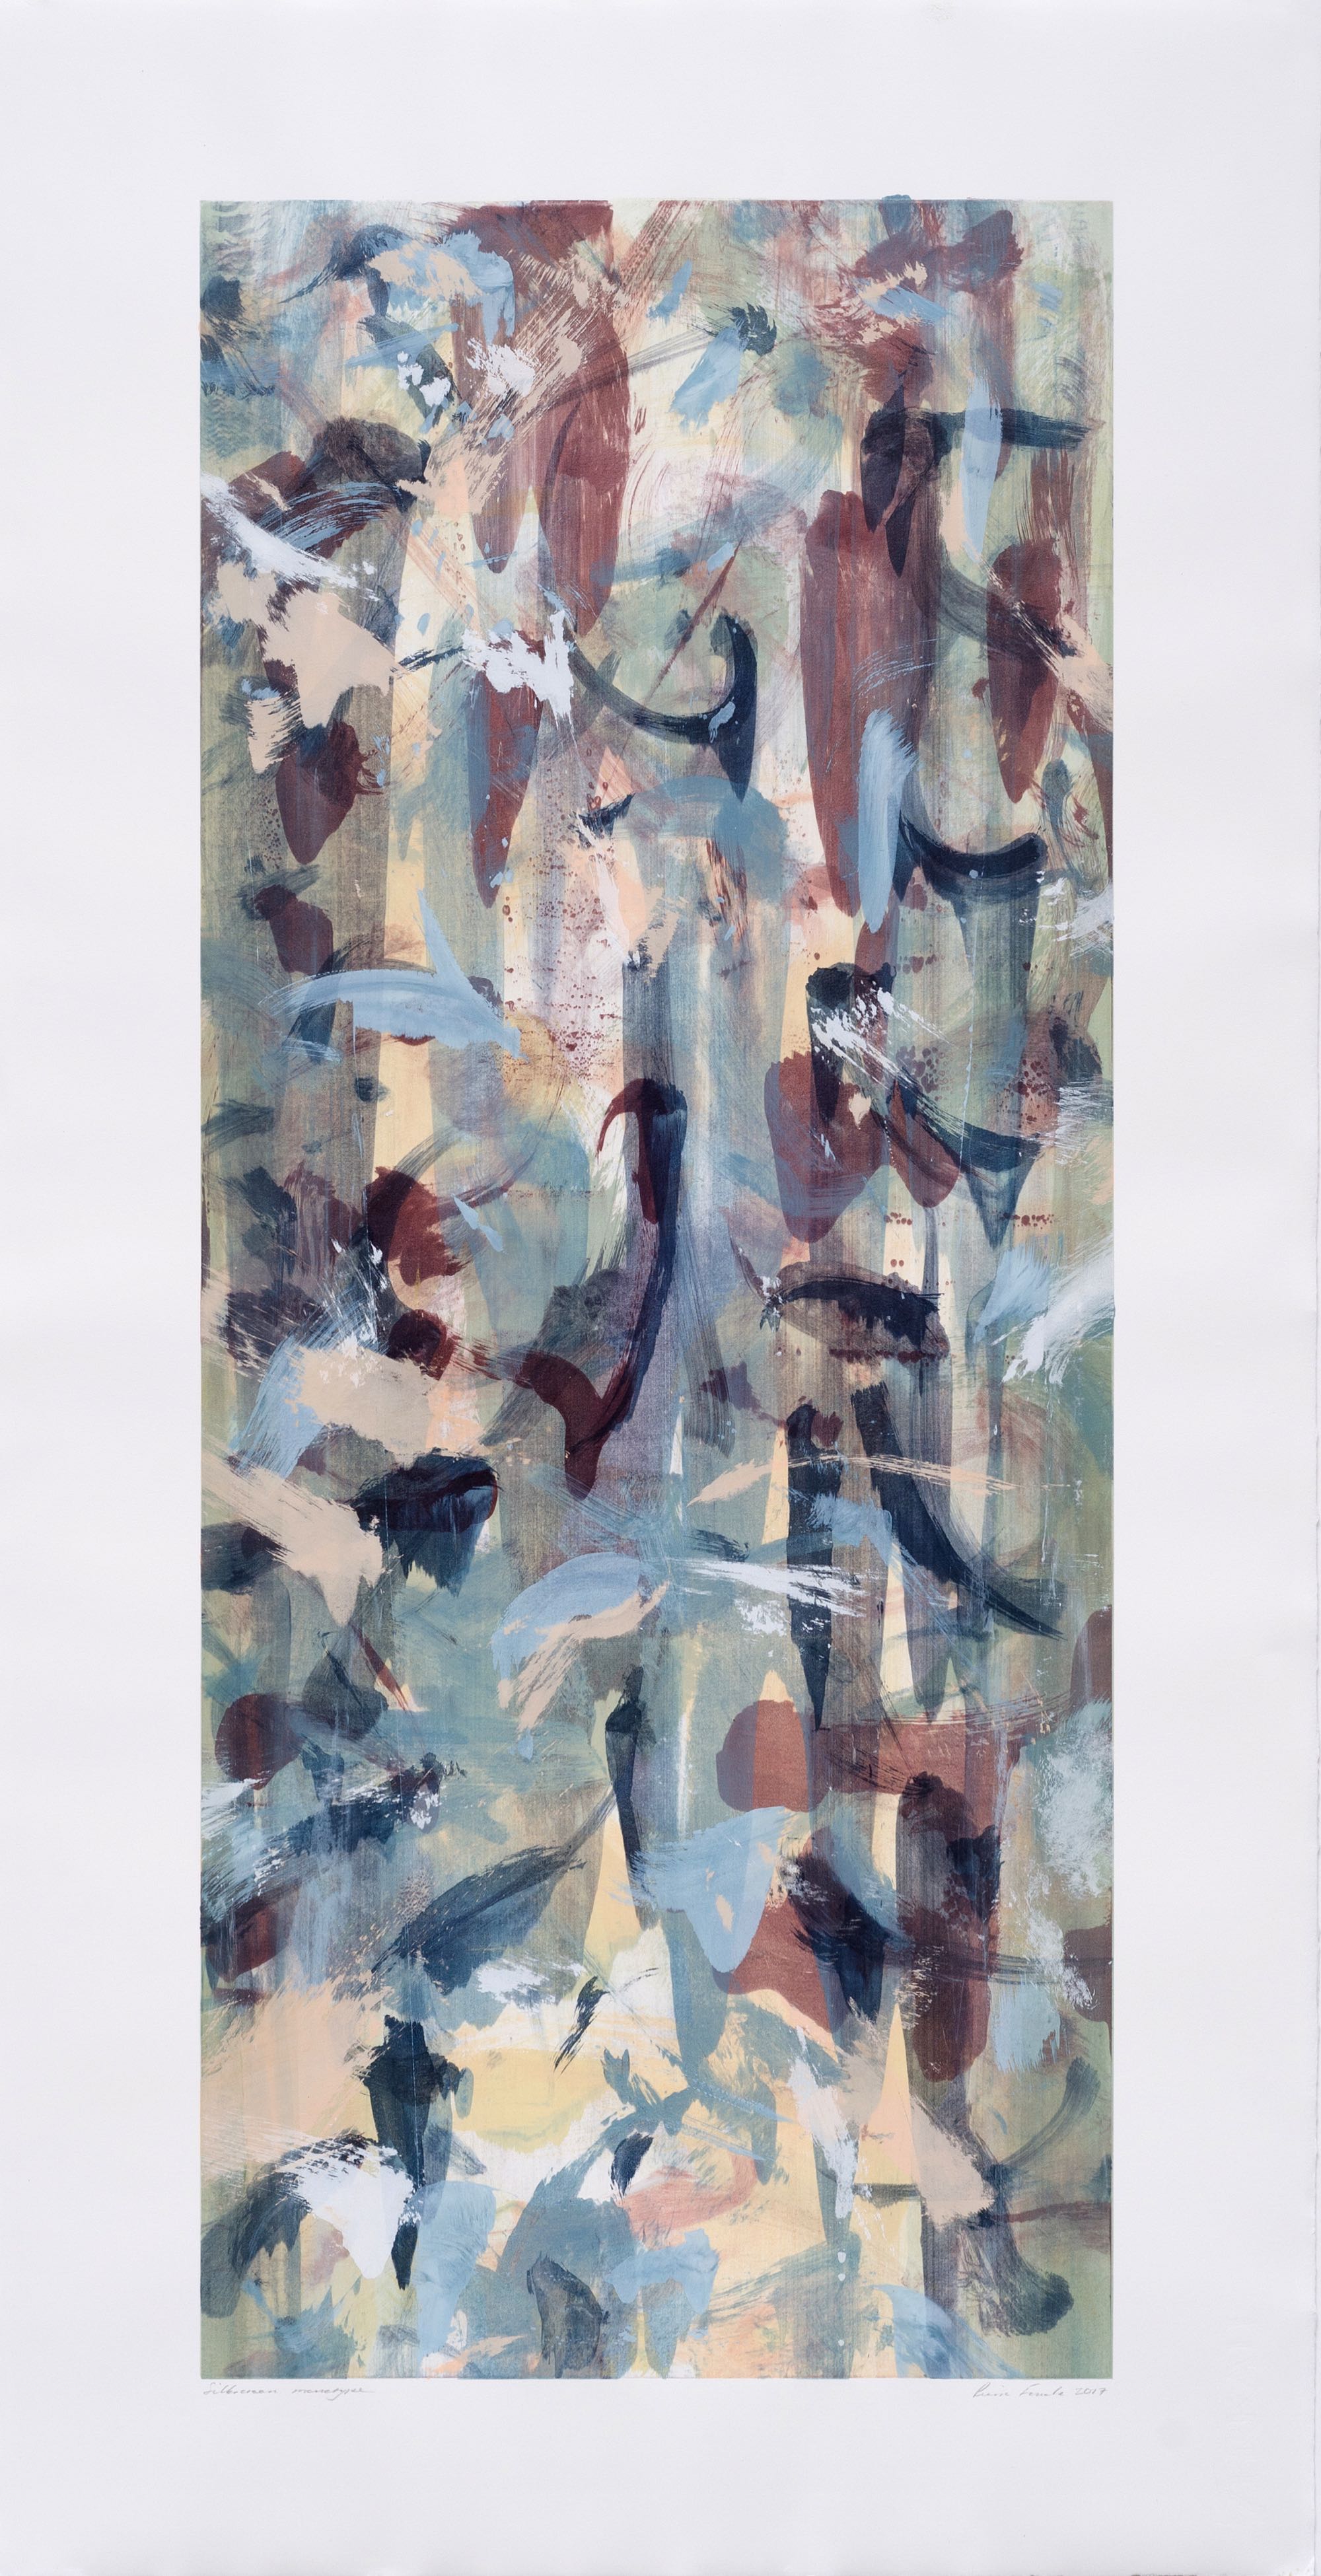  Pierre Fouché. Boekrol IV. Silkscreen monotype on Zerkall Litho paper. 90 x 37.5 cm